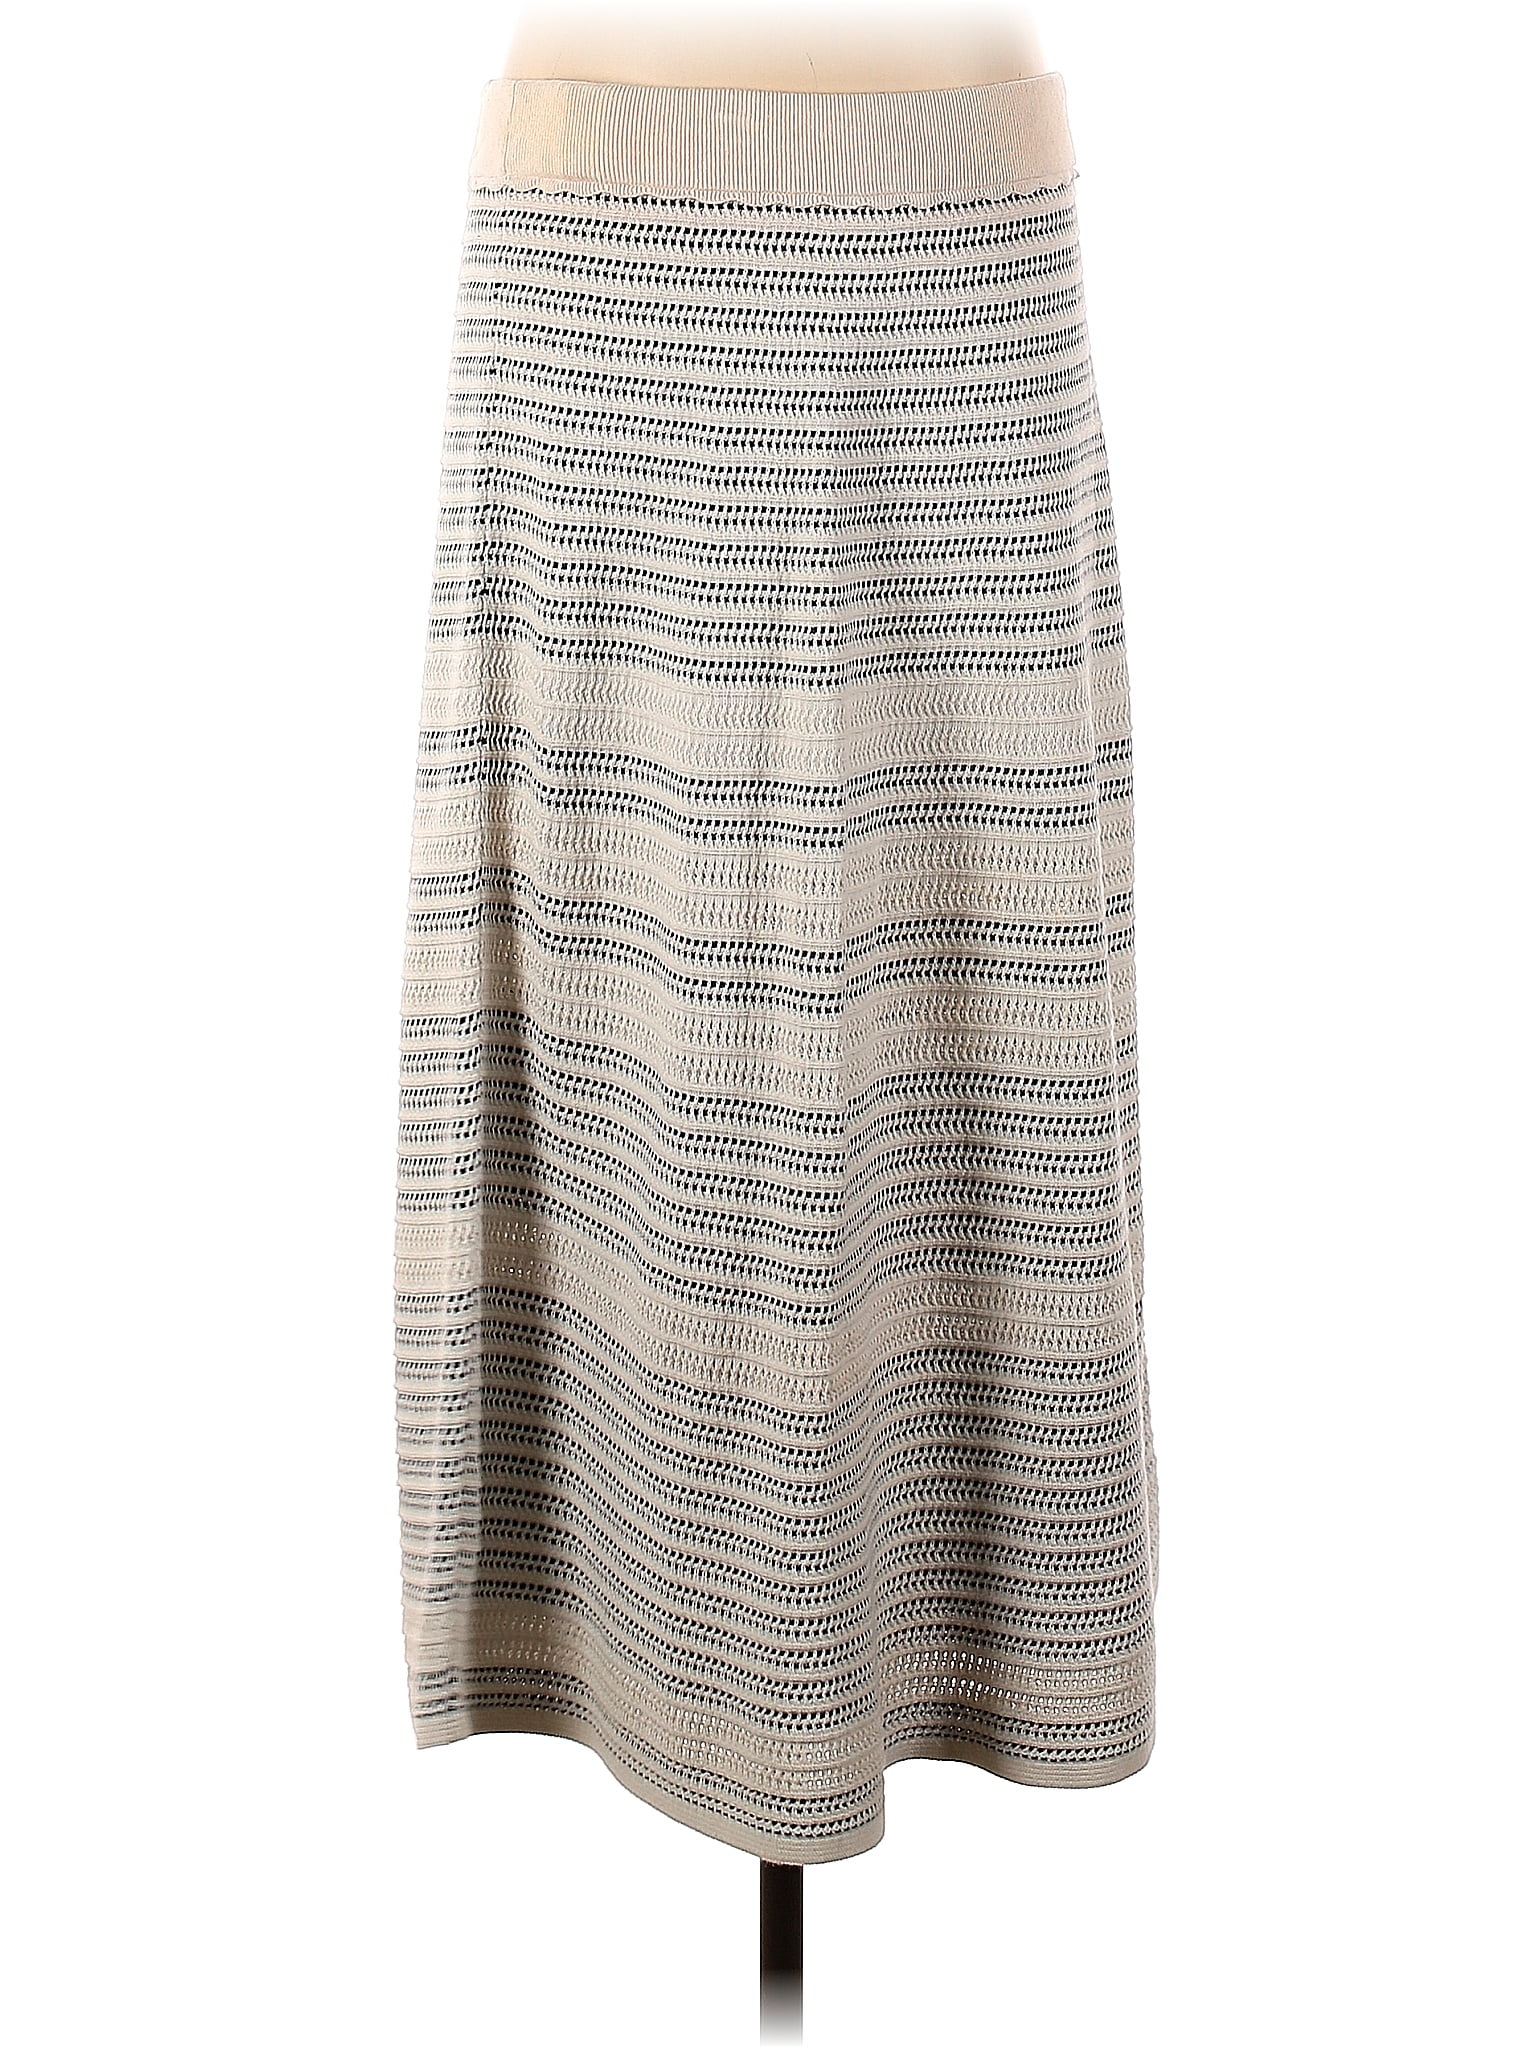 Sassy Beige Multi Plaid Tweed Skirt - Colors of Fall